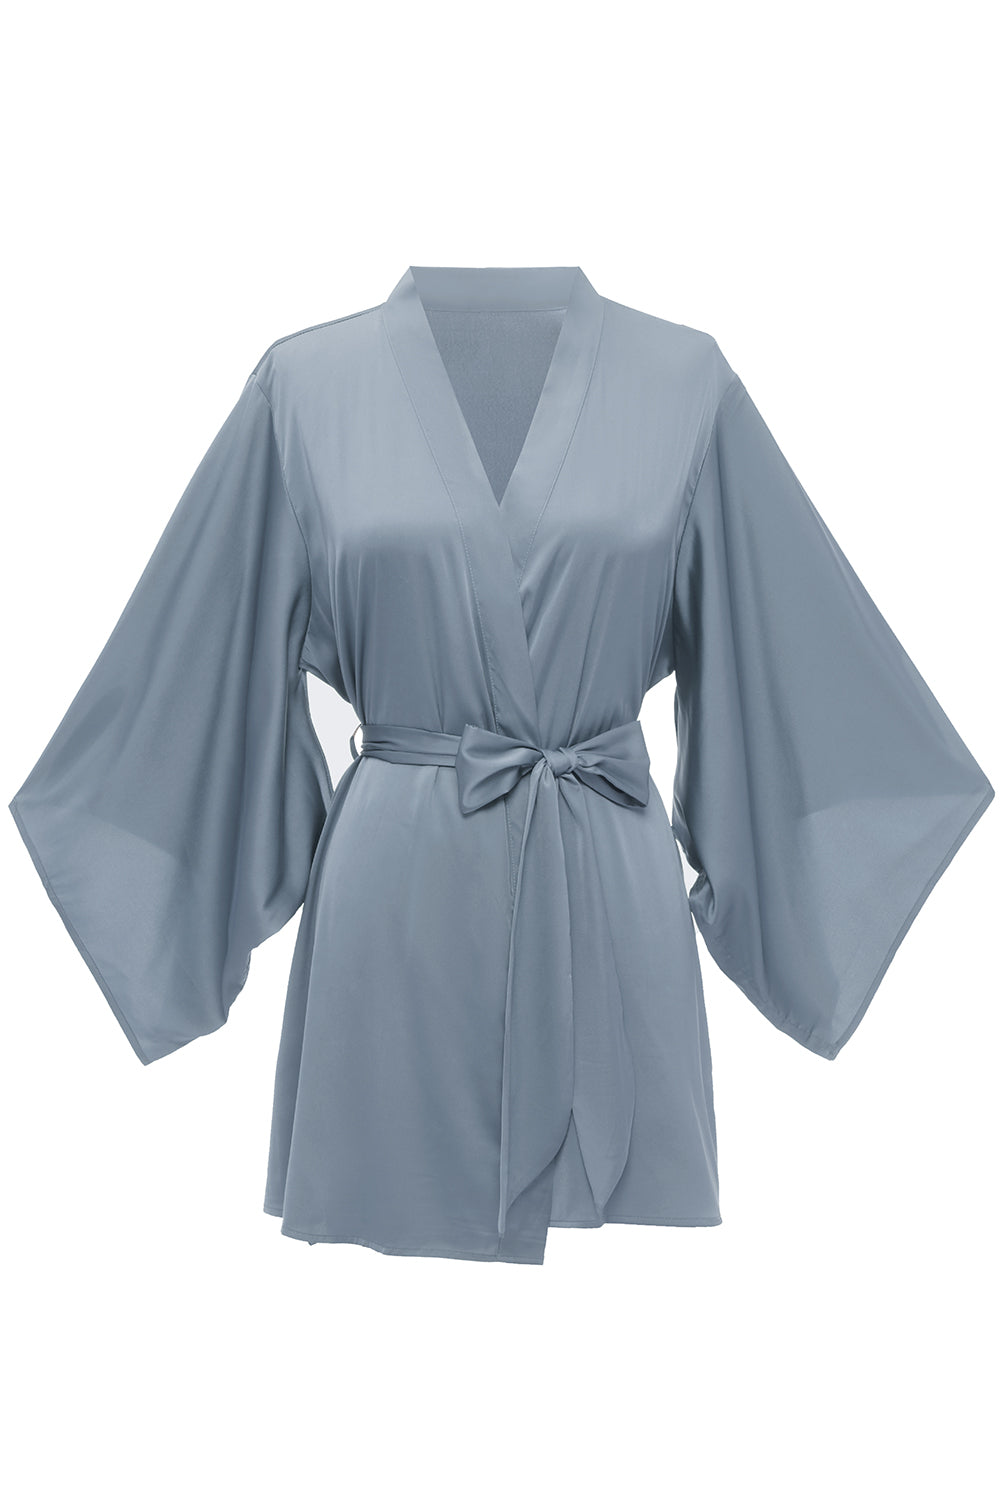 Grey Blue Solid Bridesmaid Robe